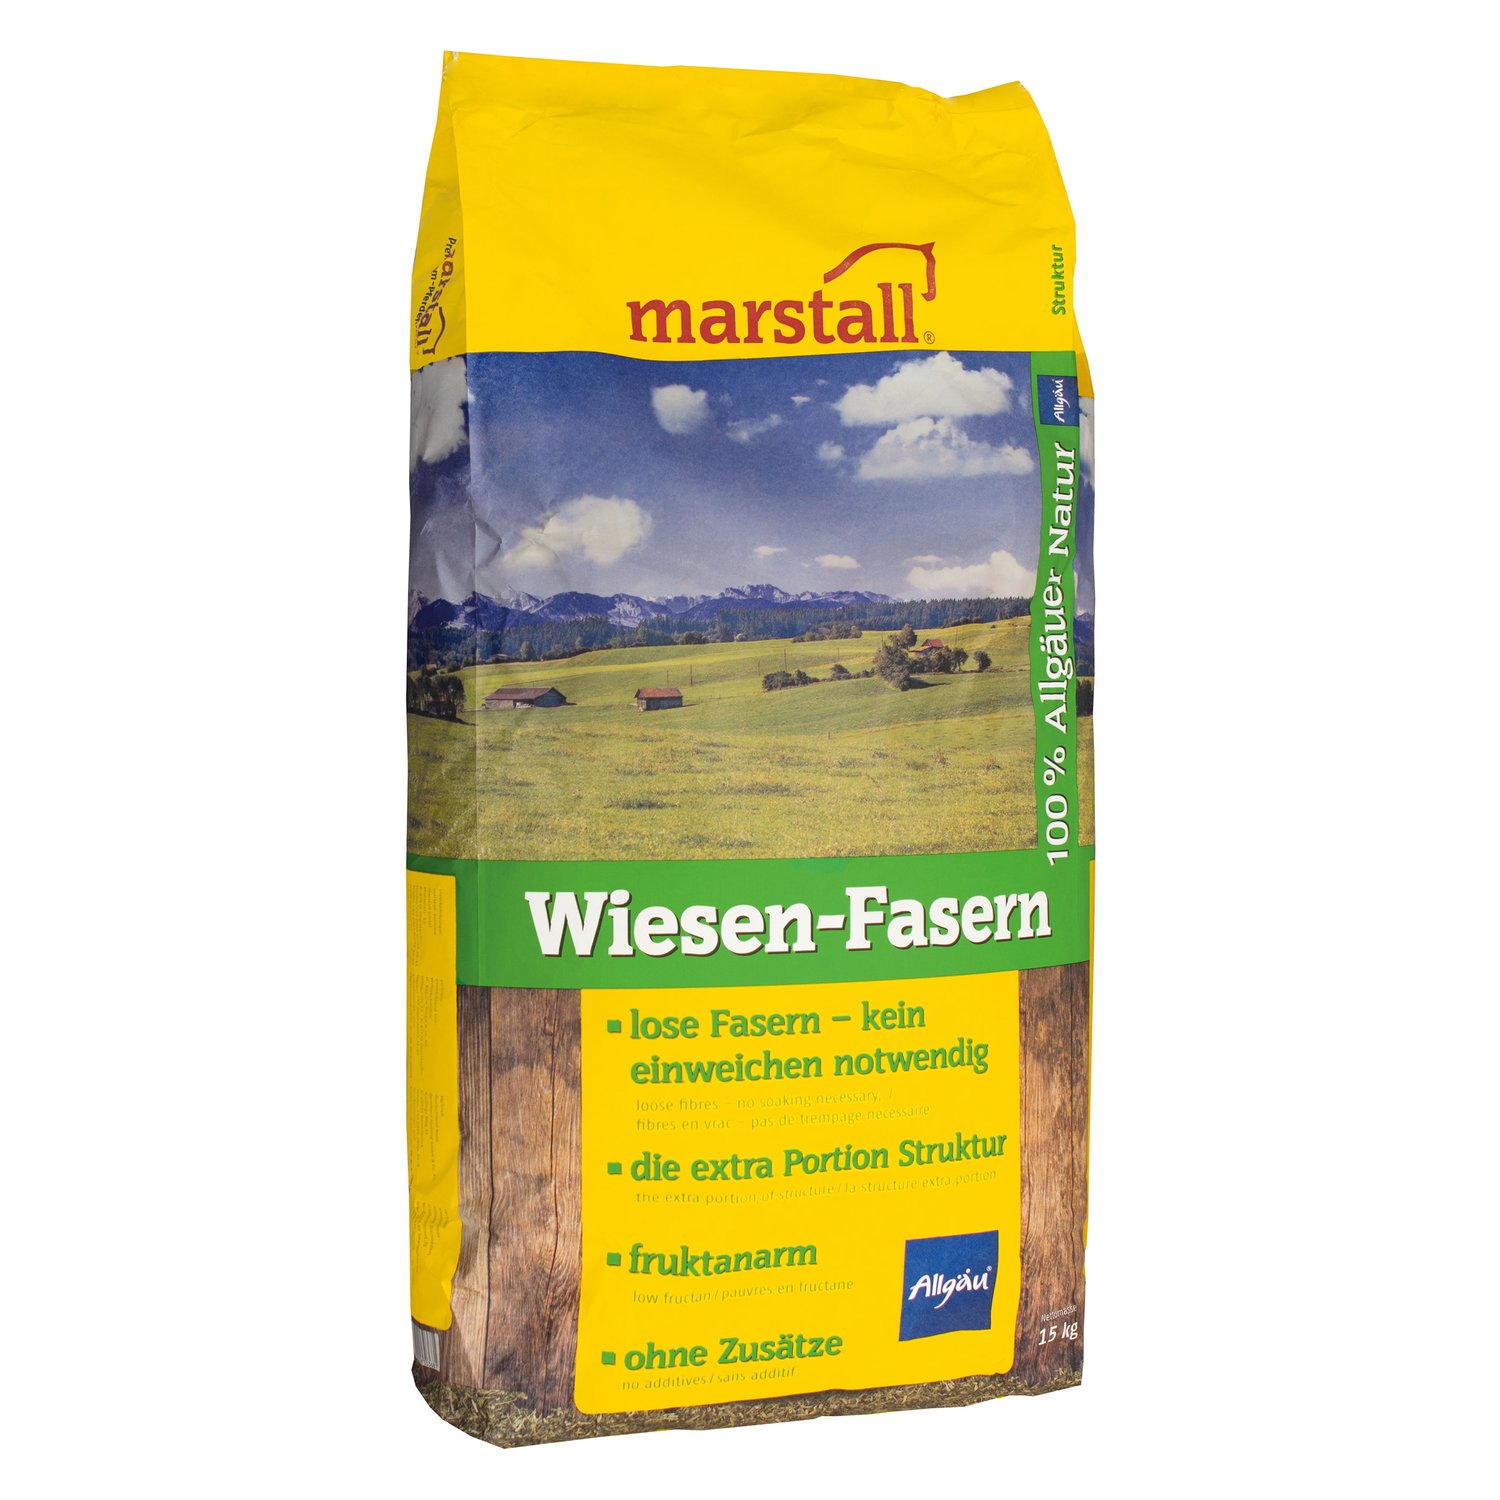 marstall Wiesen-Fasern 15 kg